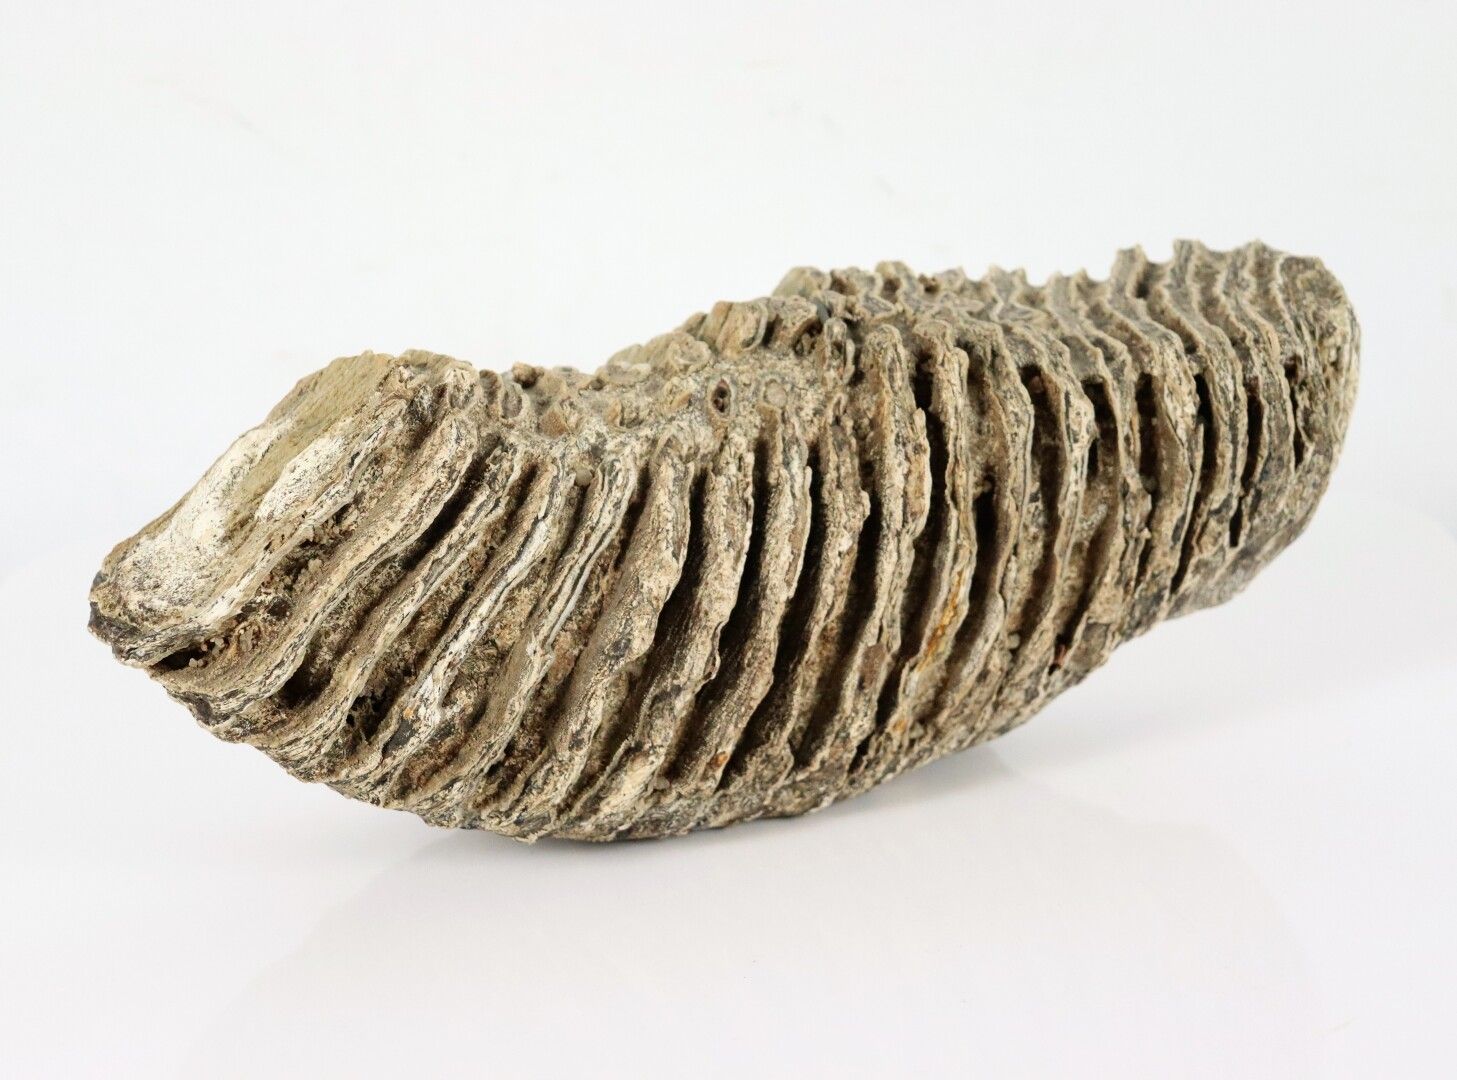 Null Molare di mammut fossilizzato.

Trovato nella Loira.

H_12 cm L_30 cm